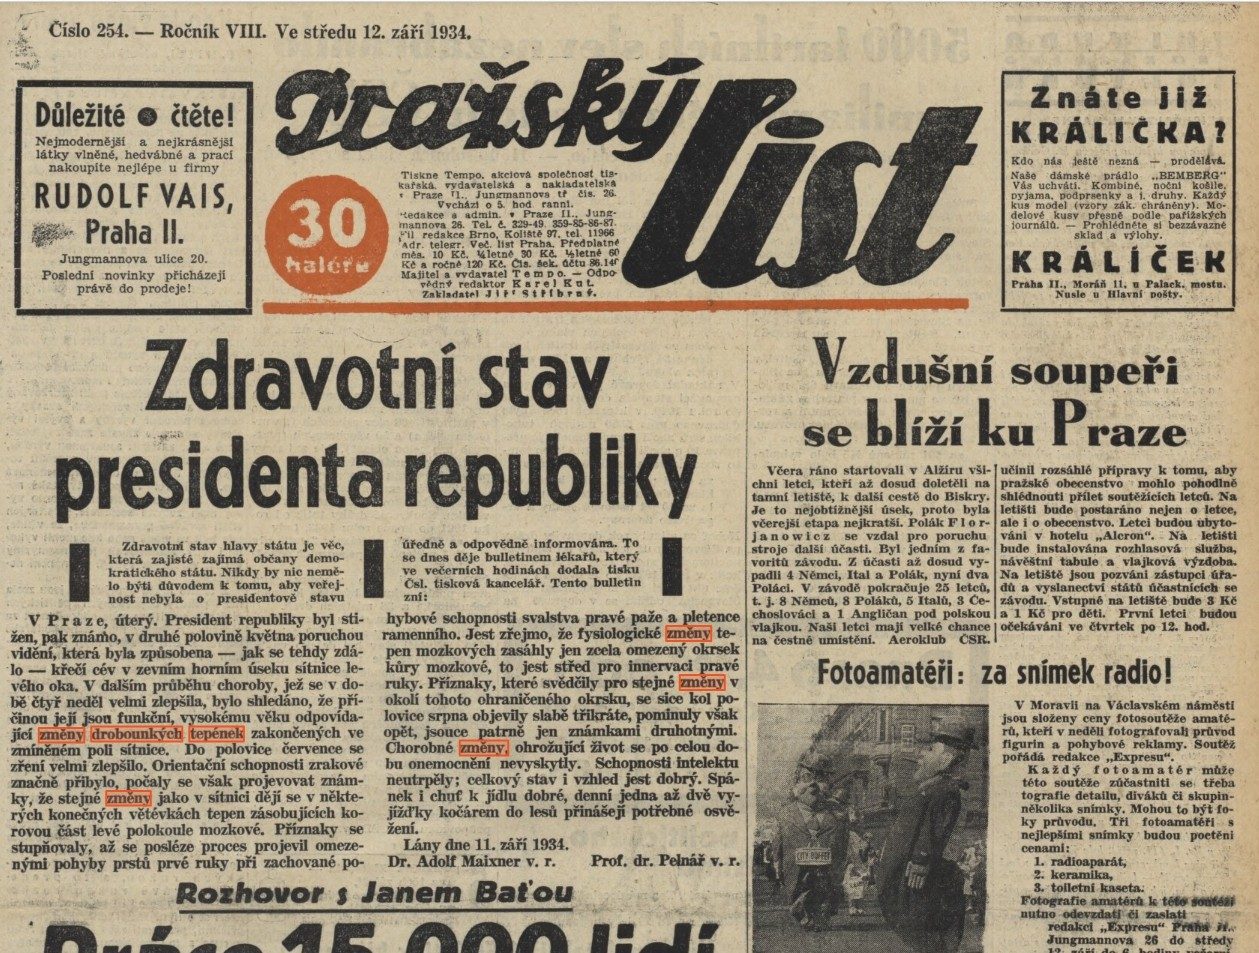 Zdravotní stav presidenta republiky - Pražský list (12. 9. 1934) 